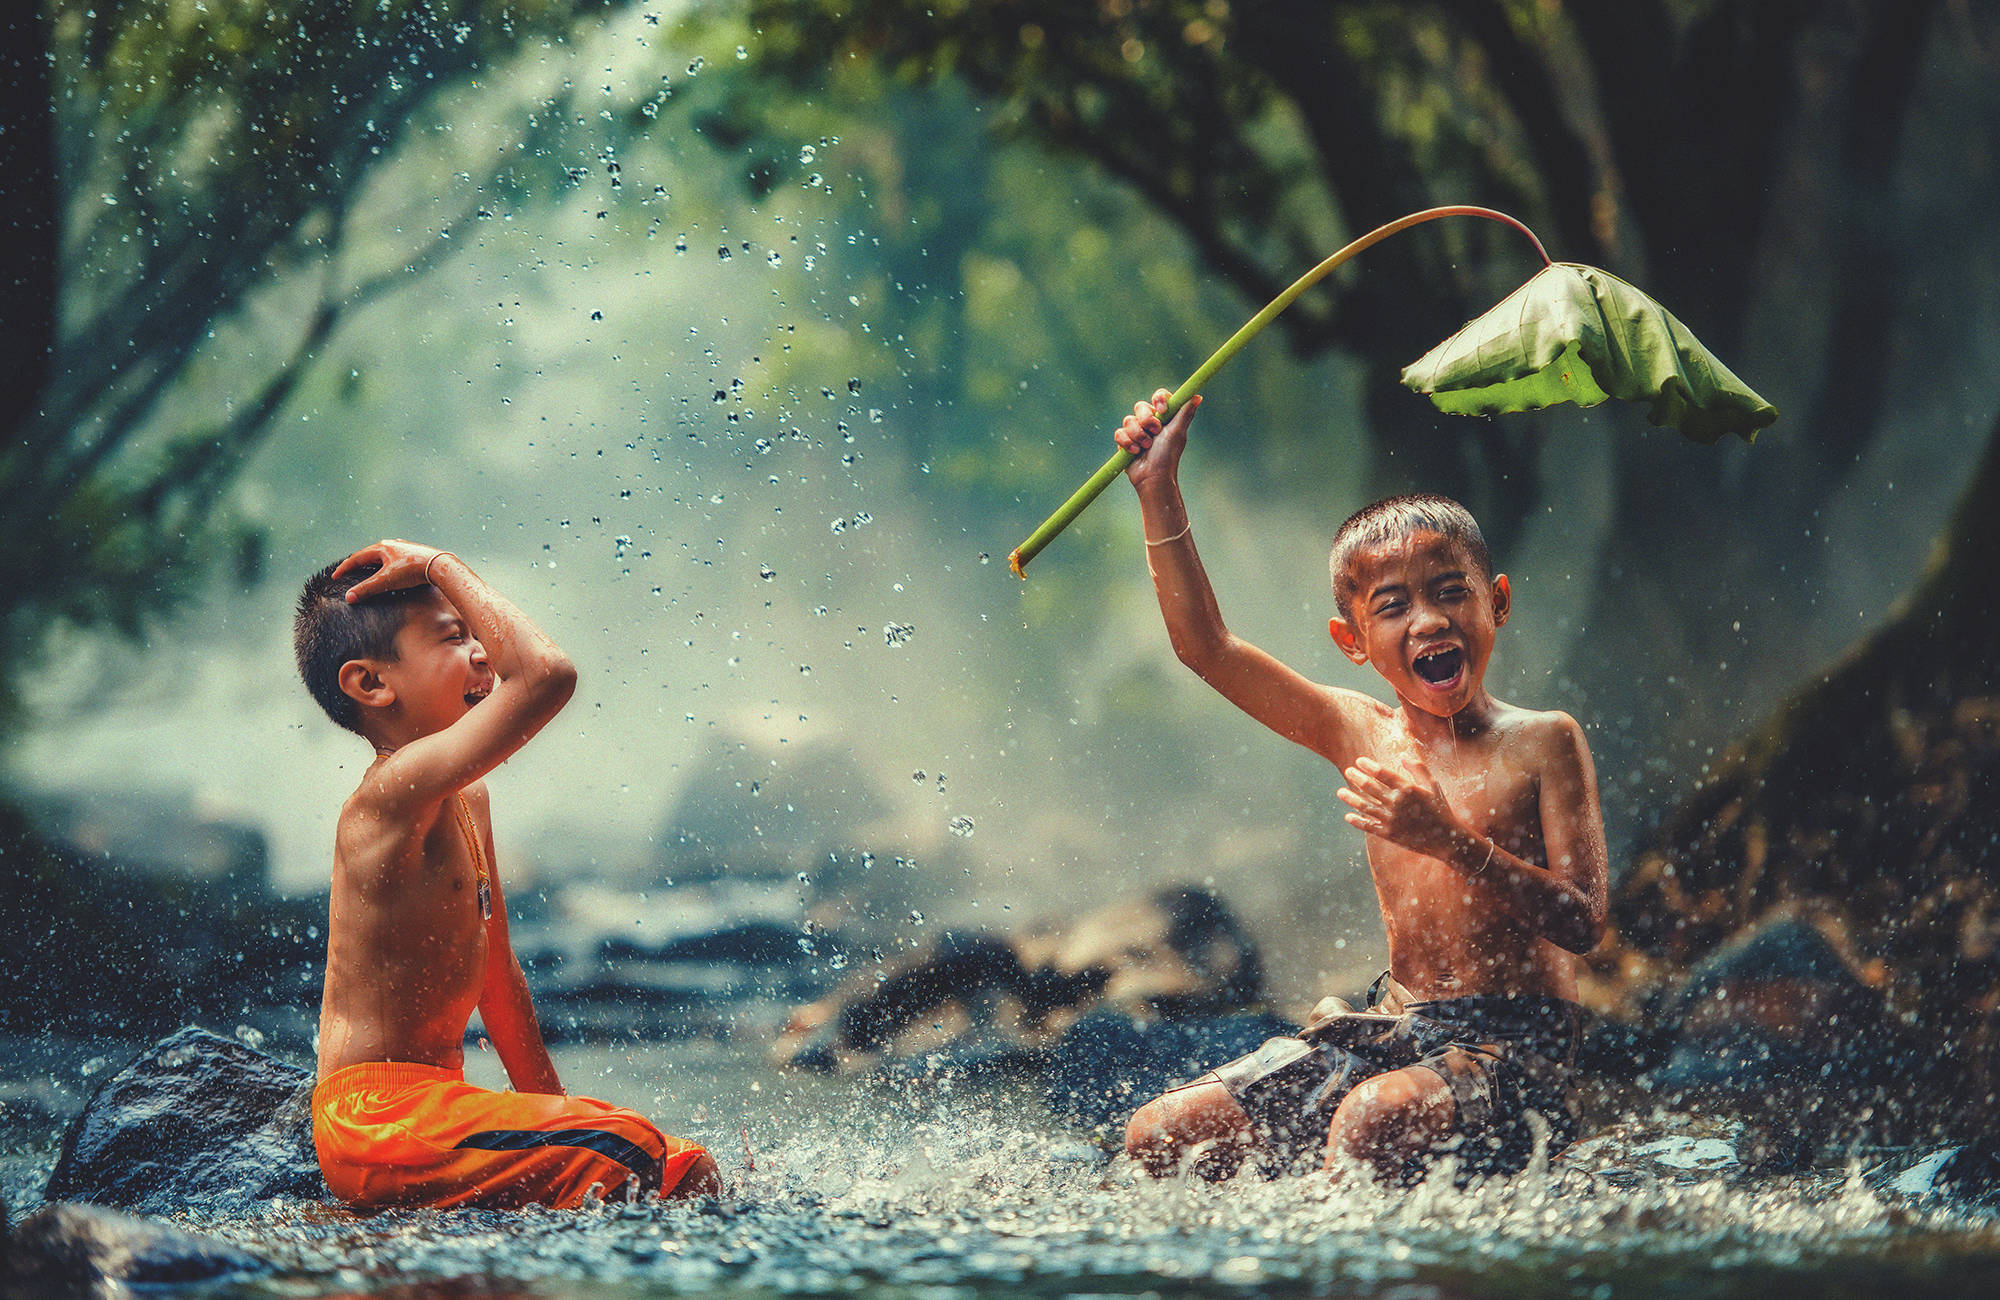 cambodia-kids-playing-river-rain-fun